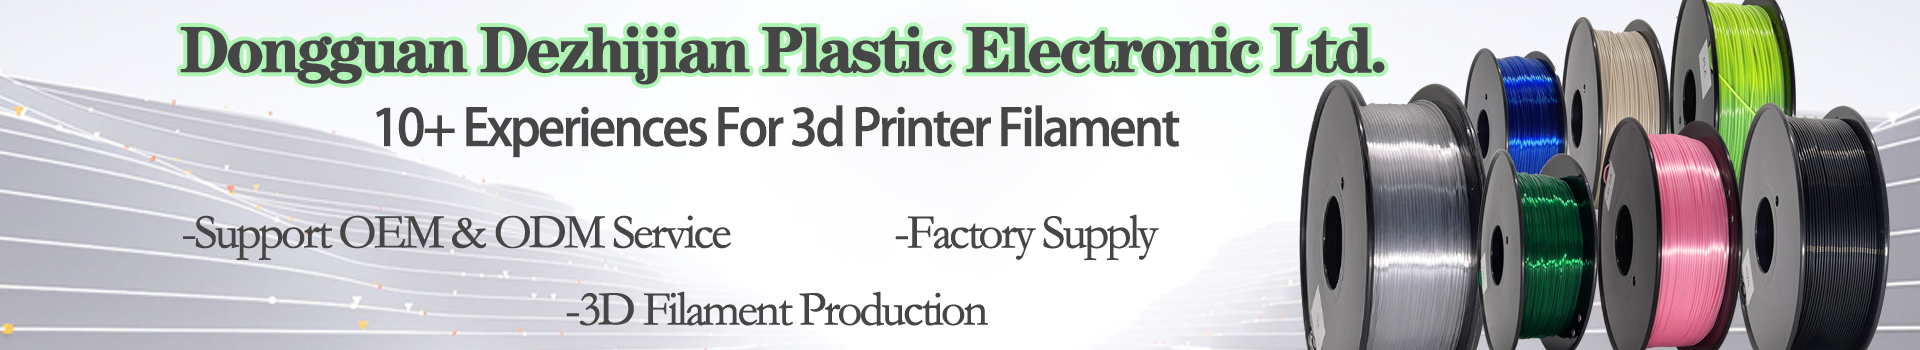 PLAフィラメントシルクトリプルカラーフィラメント、1.75mm 3Dフィラメント、3Dプリンターフィラメント